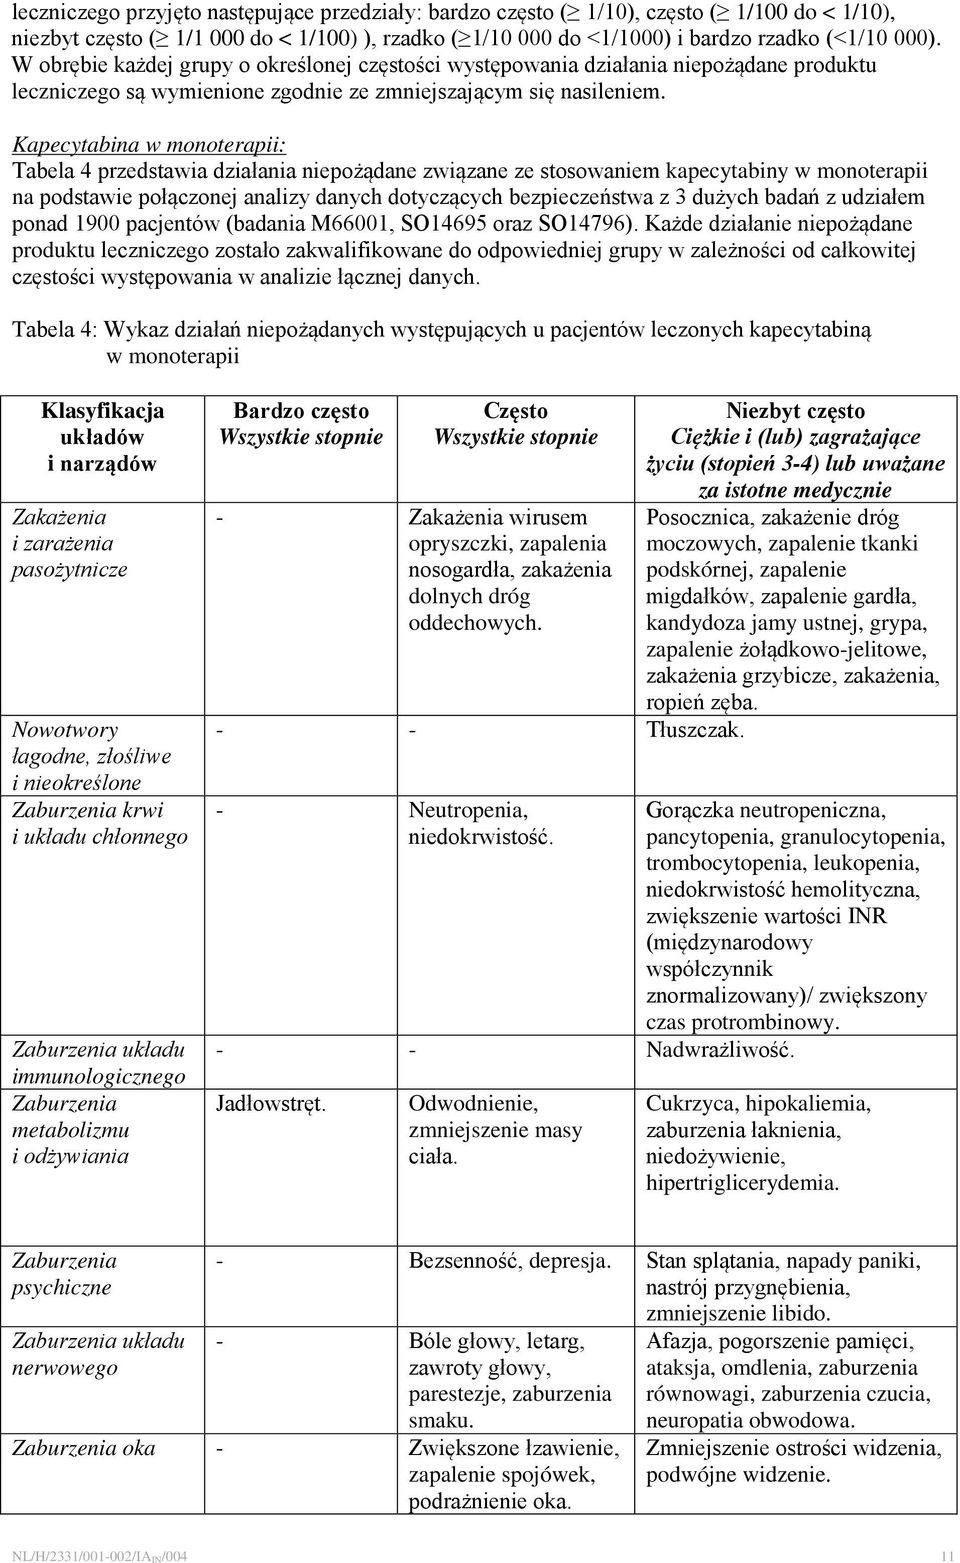 Kapecytabina w monoterapii: Tabela 4 przedstawia działania niepożądane związane ze stosowaniem kapecytabiny w monoterapii na podstawie połączonej analizy danych dotyczących bezpieczeństwa z 3 dużych